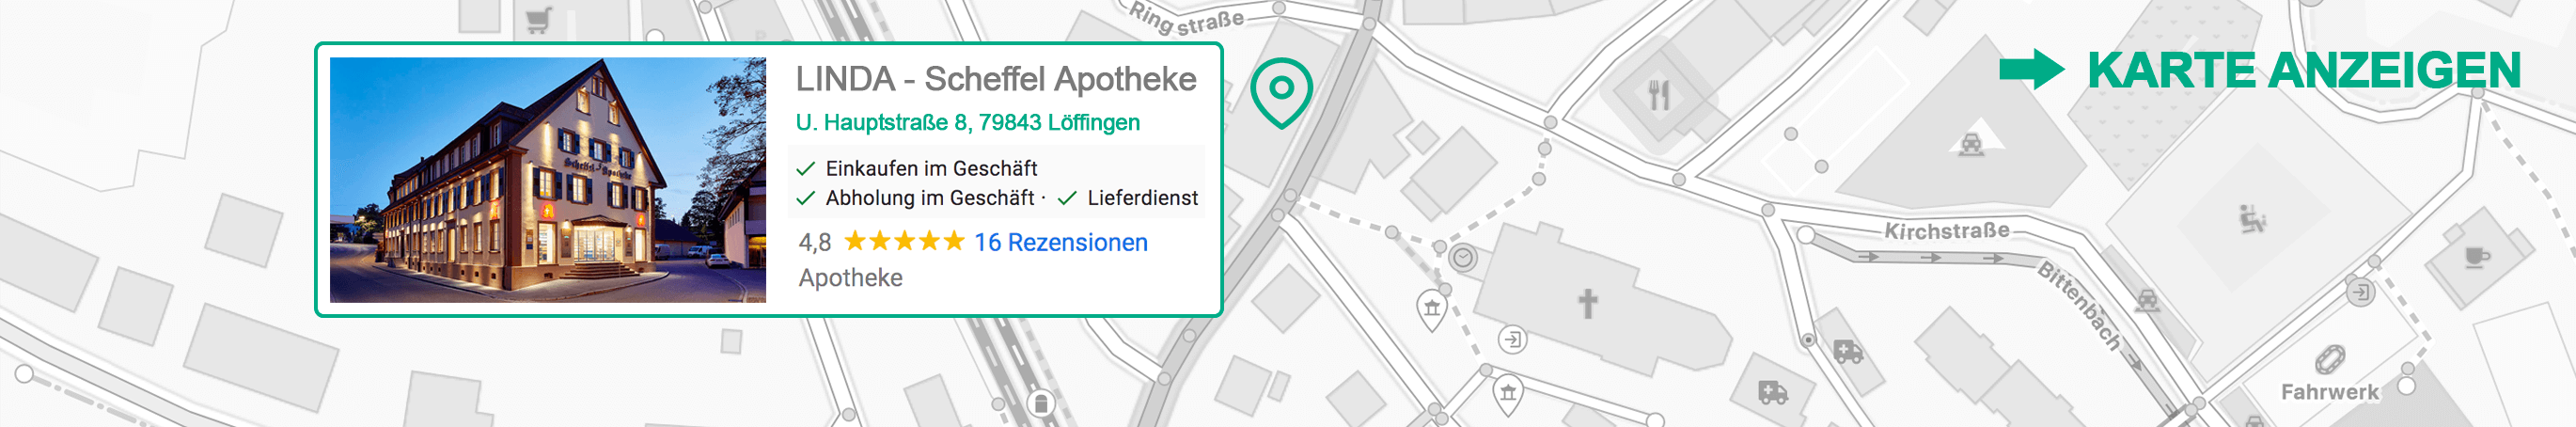 Scheffel LINDA-Apotheke in Löffingen - zur Karte klicken